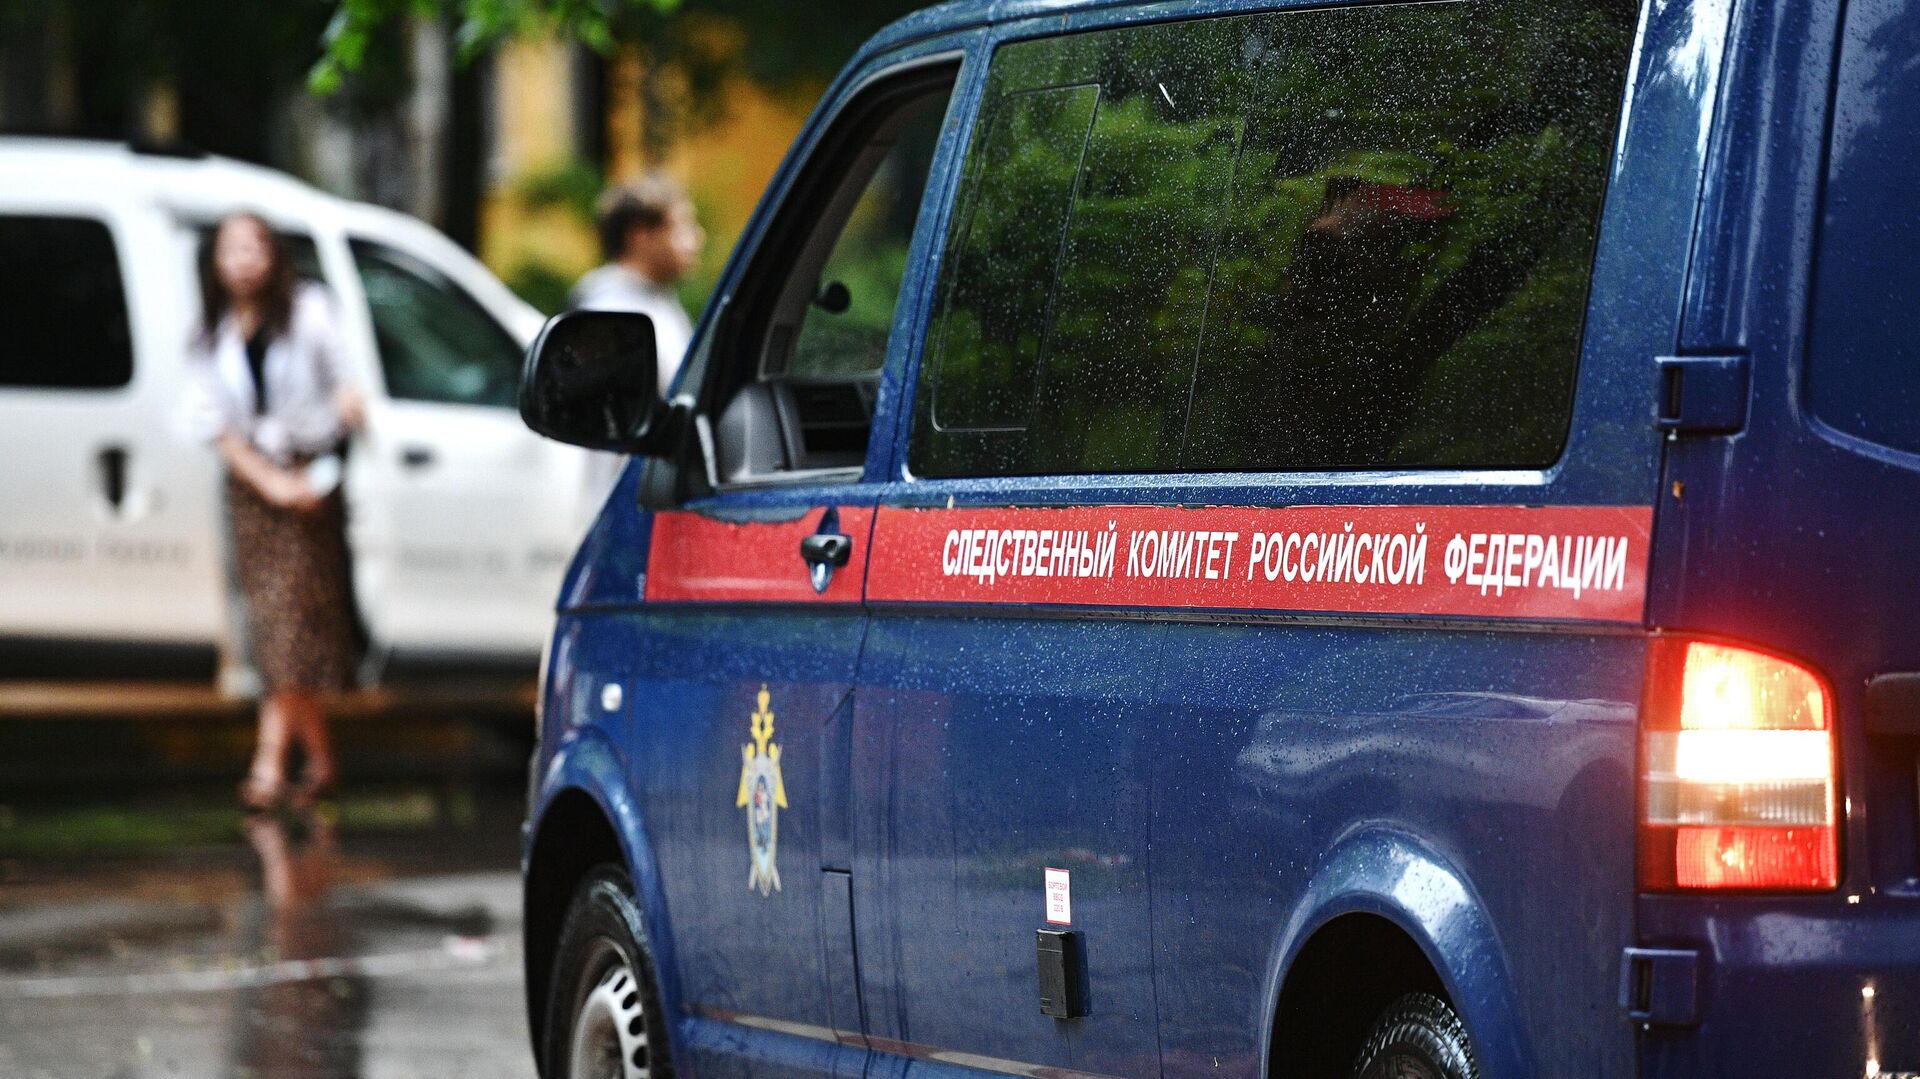 СК расследует избиение таксистами жителей Ленинградской области